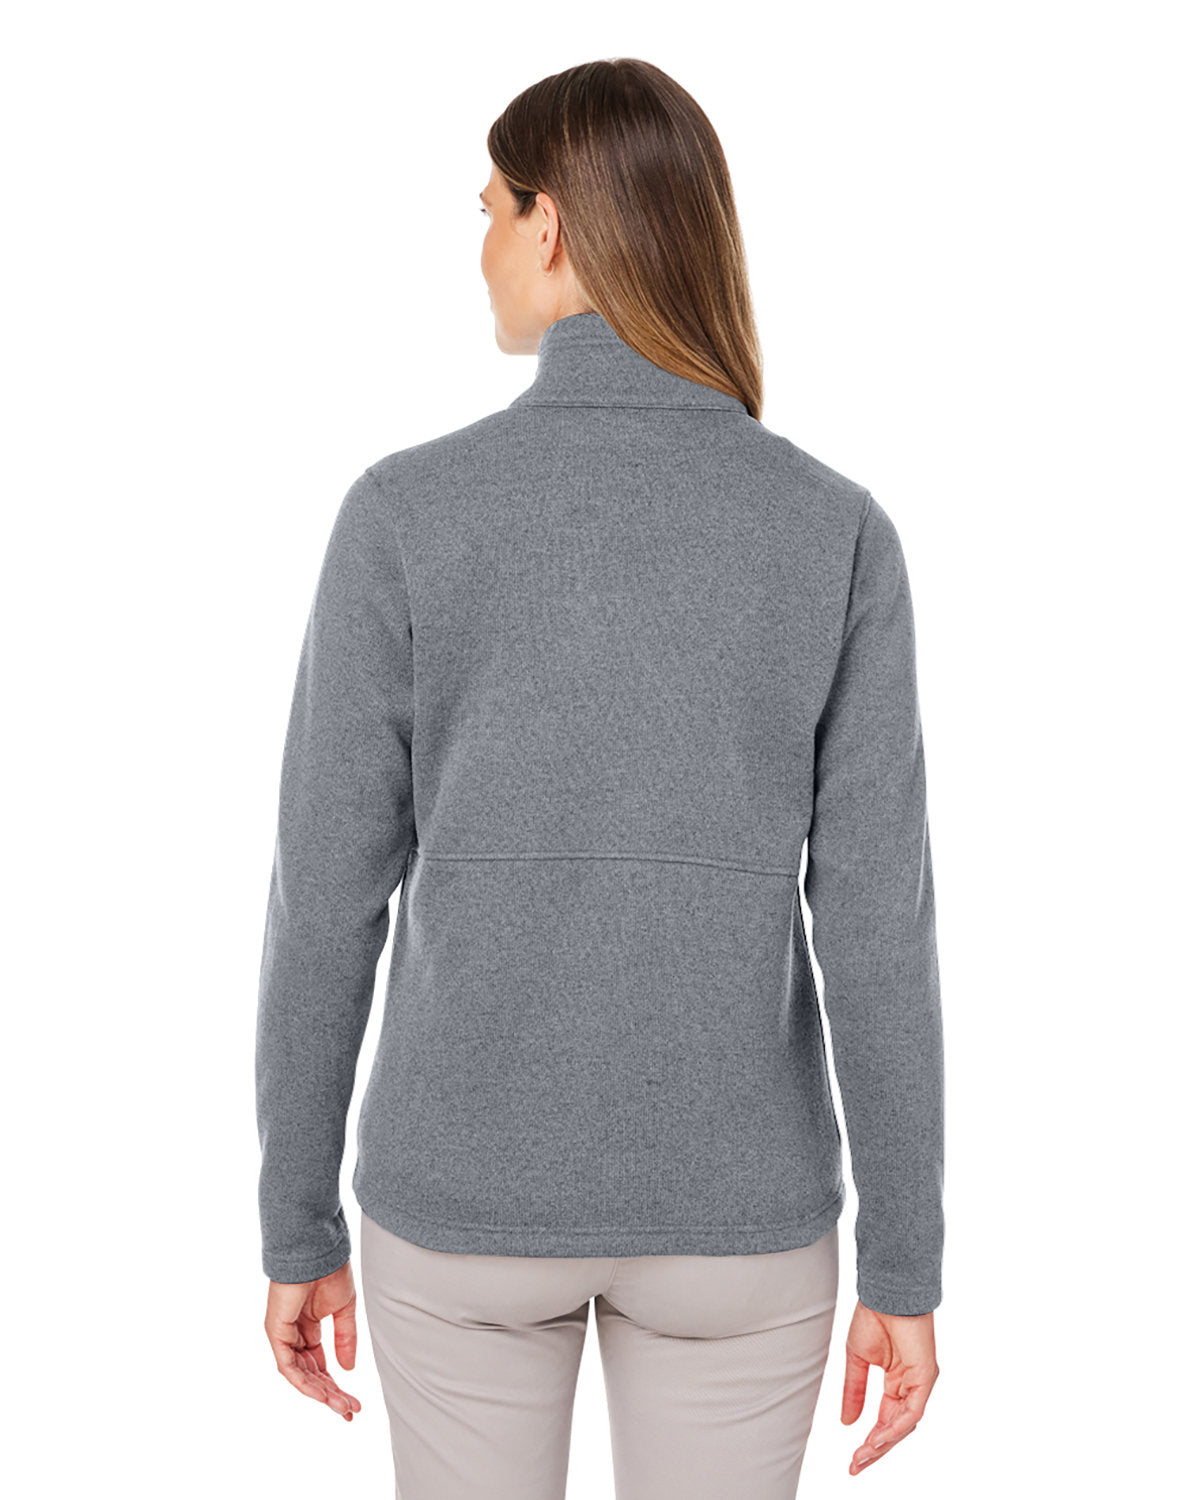 Marmot Ladies Dropline Sweater Fleece Jackets, Steel Onyx